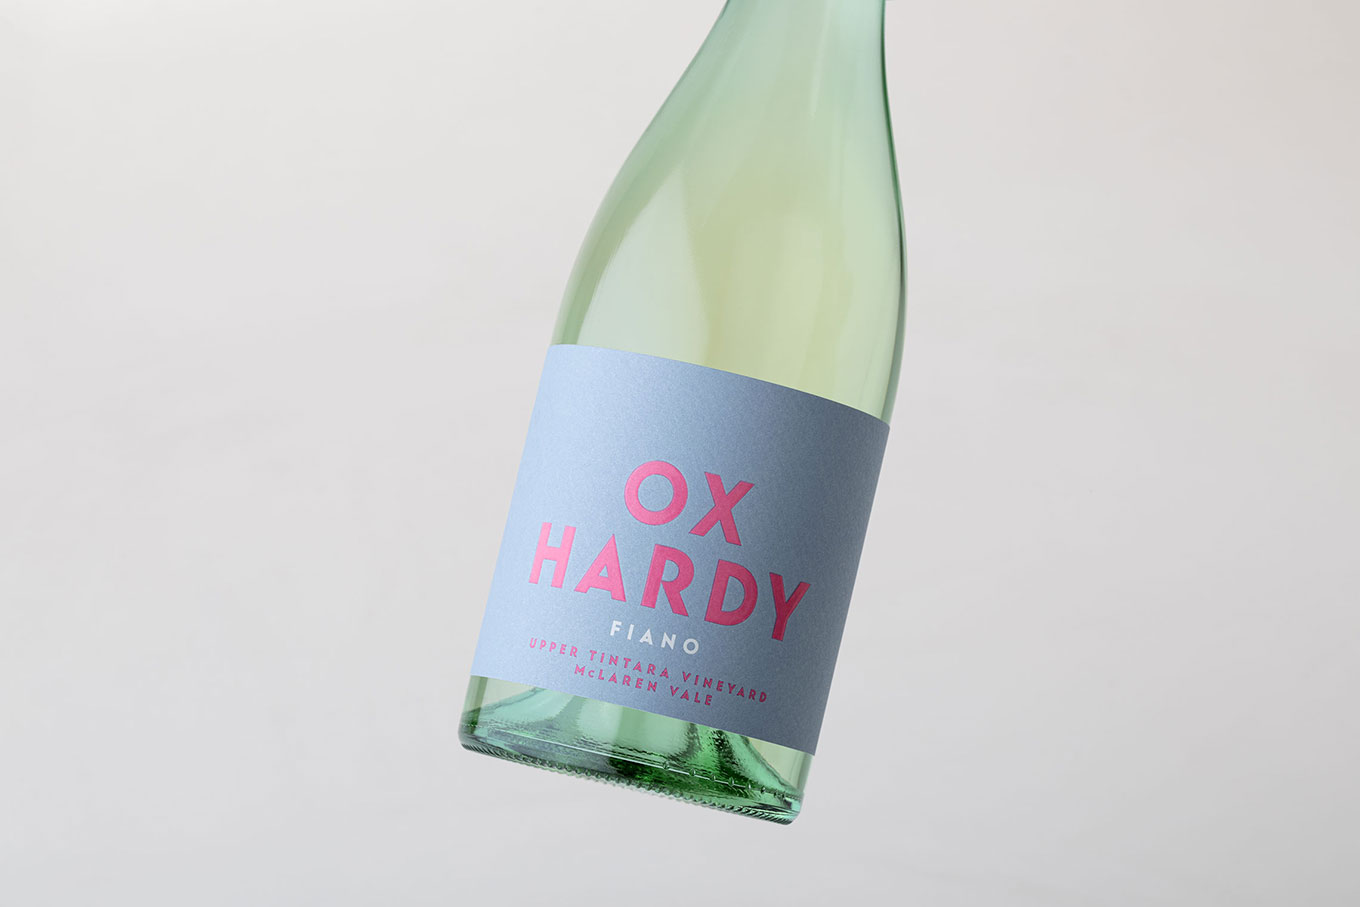 Ox Hardy Wines, Little Ox Fiano